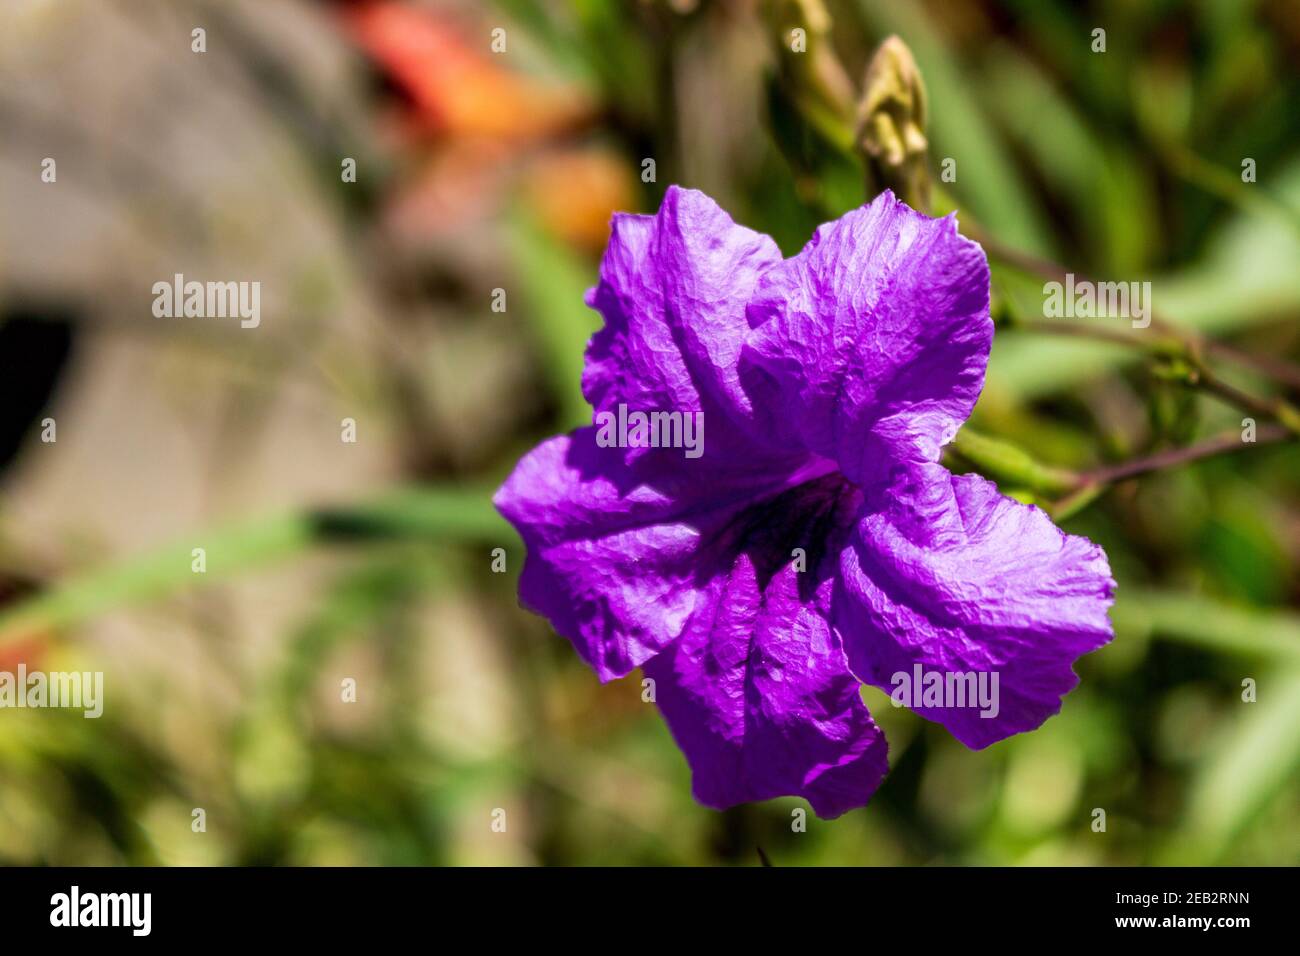 Gros plan d'un pétunia mexicain (Ruellia simplex), la fleur pourpre vibrante se distingue de l'arrière-plan. Banque D'Images